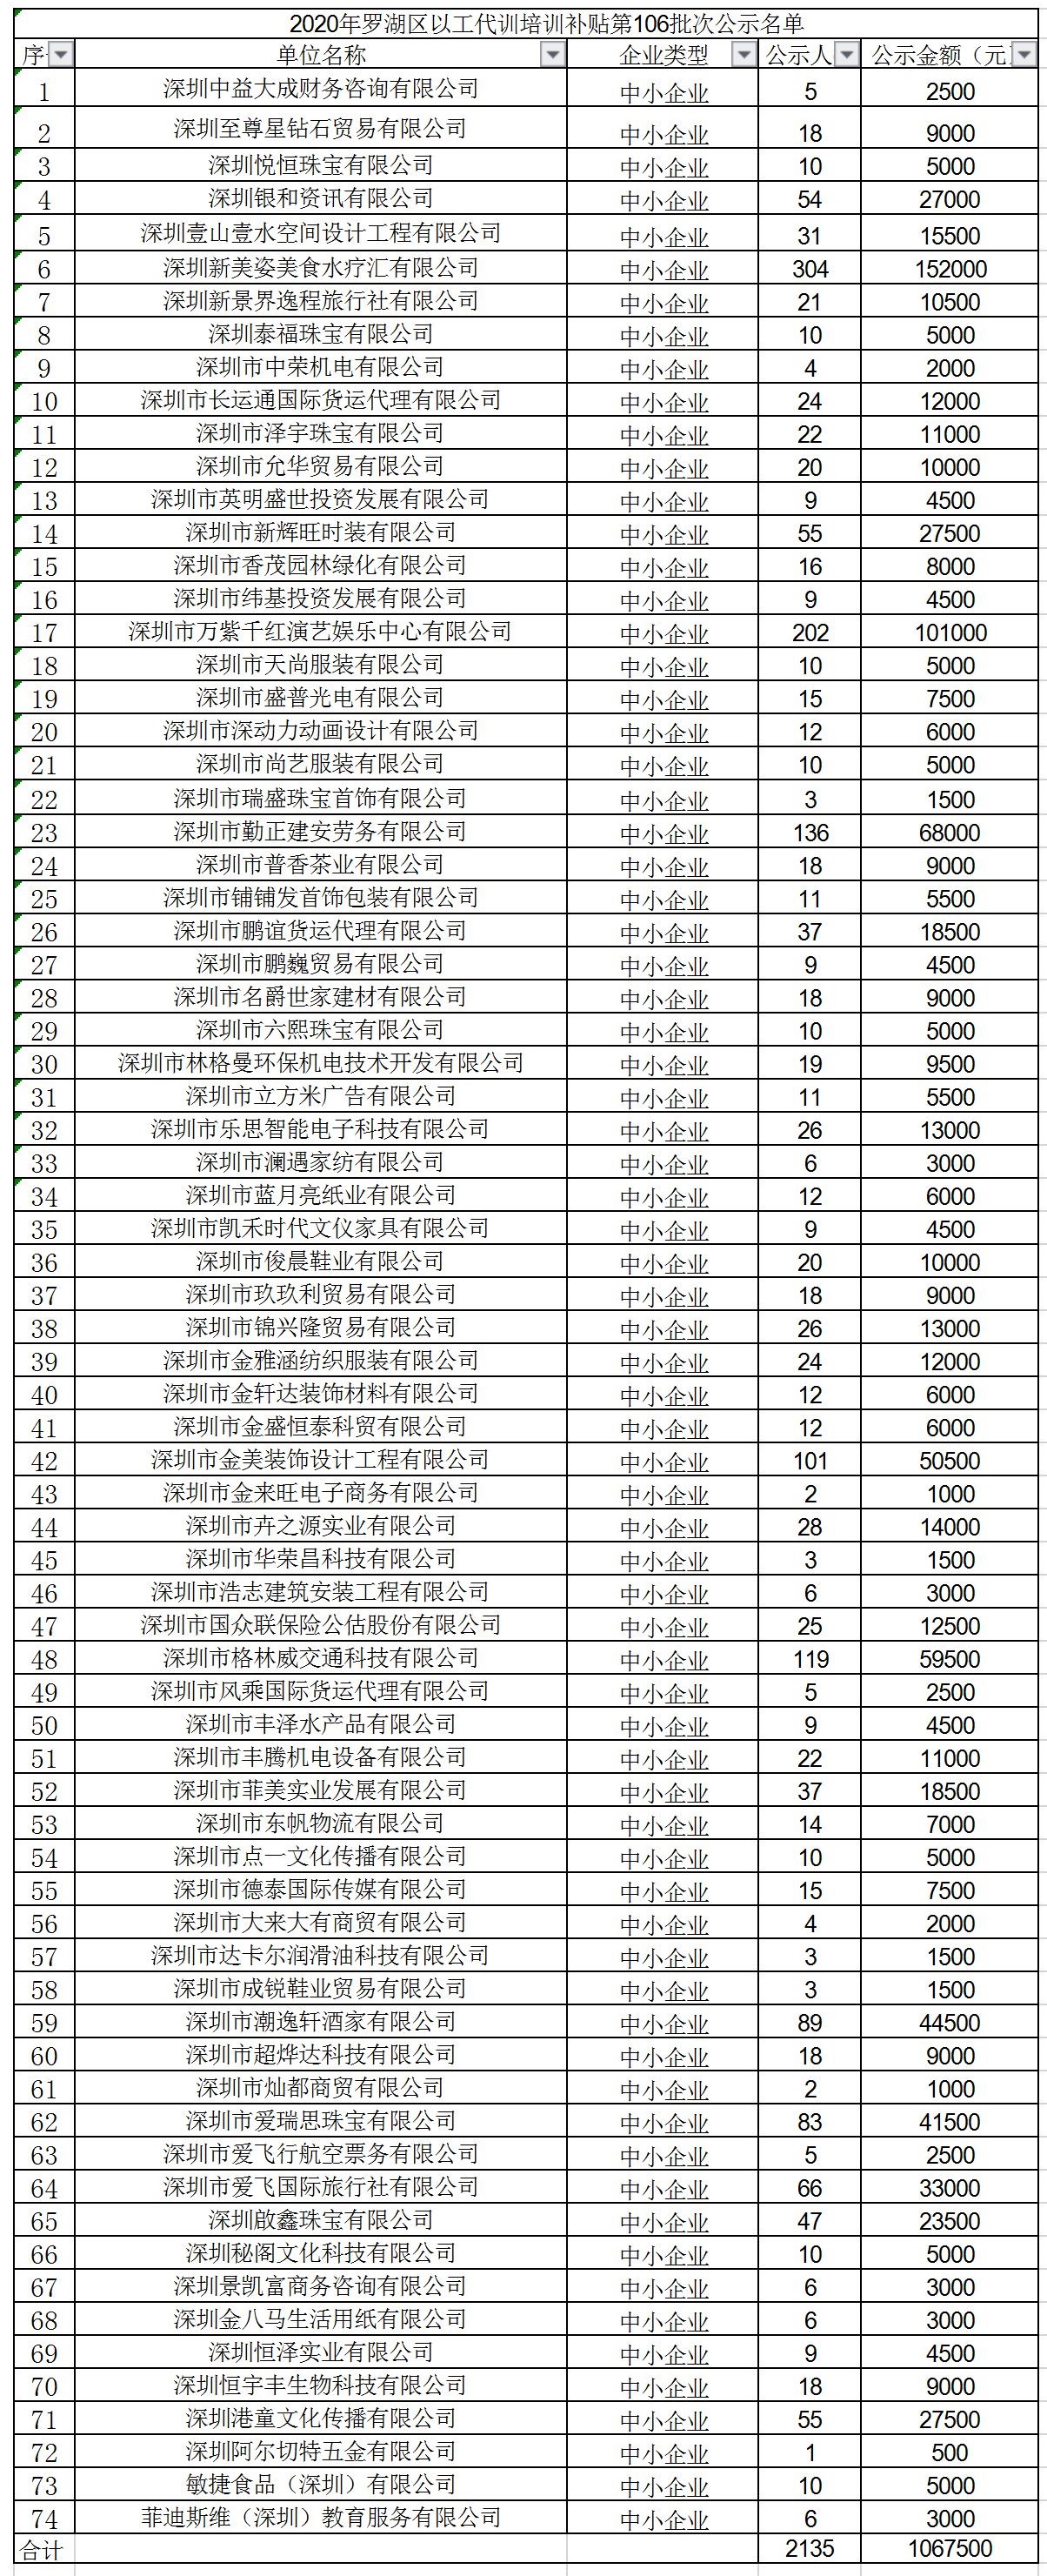 2020年深圳市罗湖区以工代训培训补贴第106批次公示名单.jpg